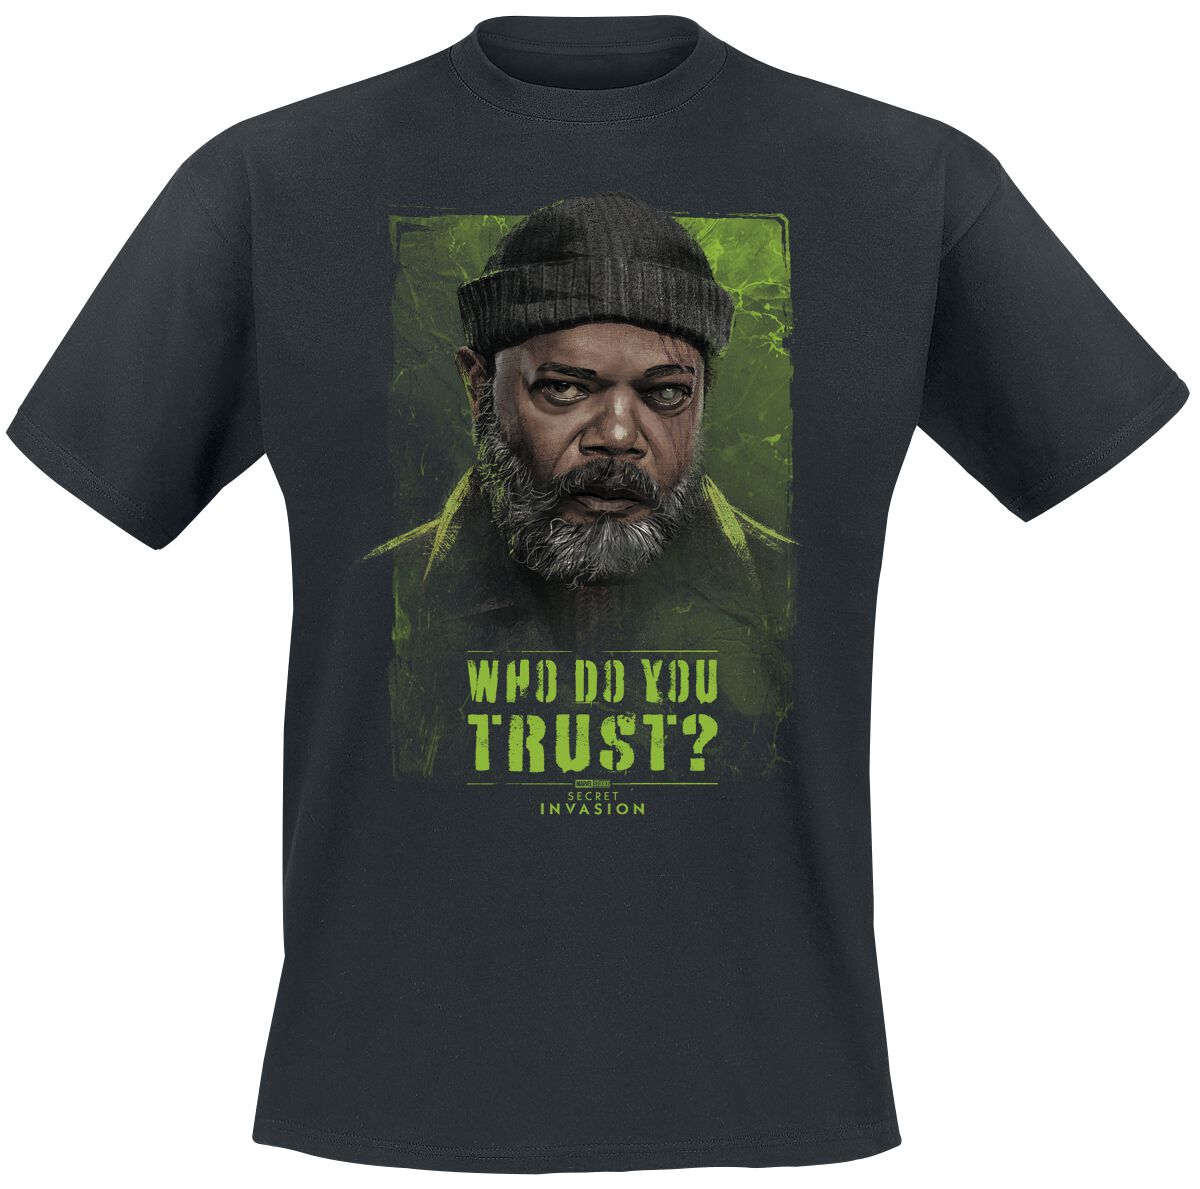 Secret Invasion - Marvel T-Shirt - Who Do You Trust? Nick Fury - S bis XXL - für Männer - Größe S - schwarz  - EMP exklusives Merchandise!